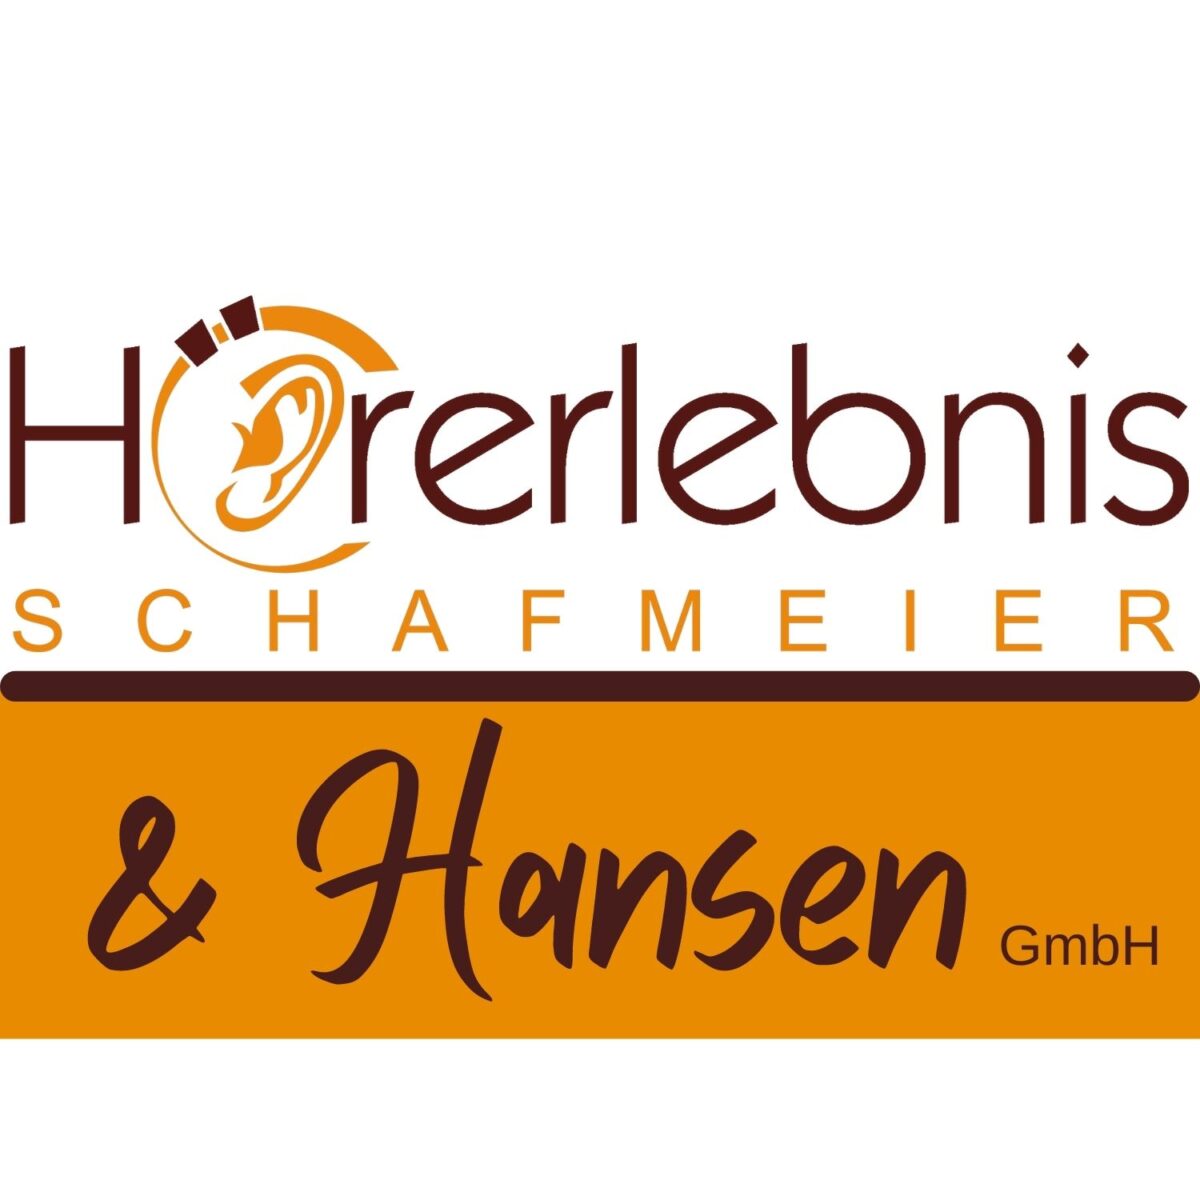 Hörerlebnis Schafmeier & Hansen GmbH